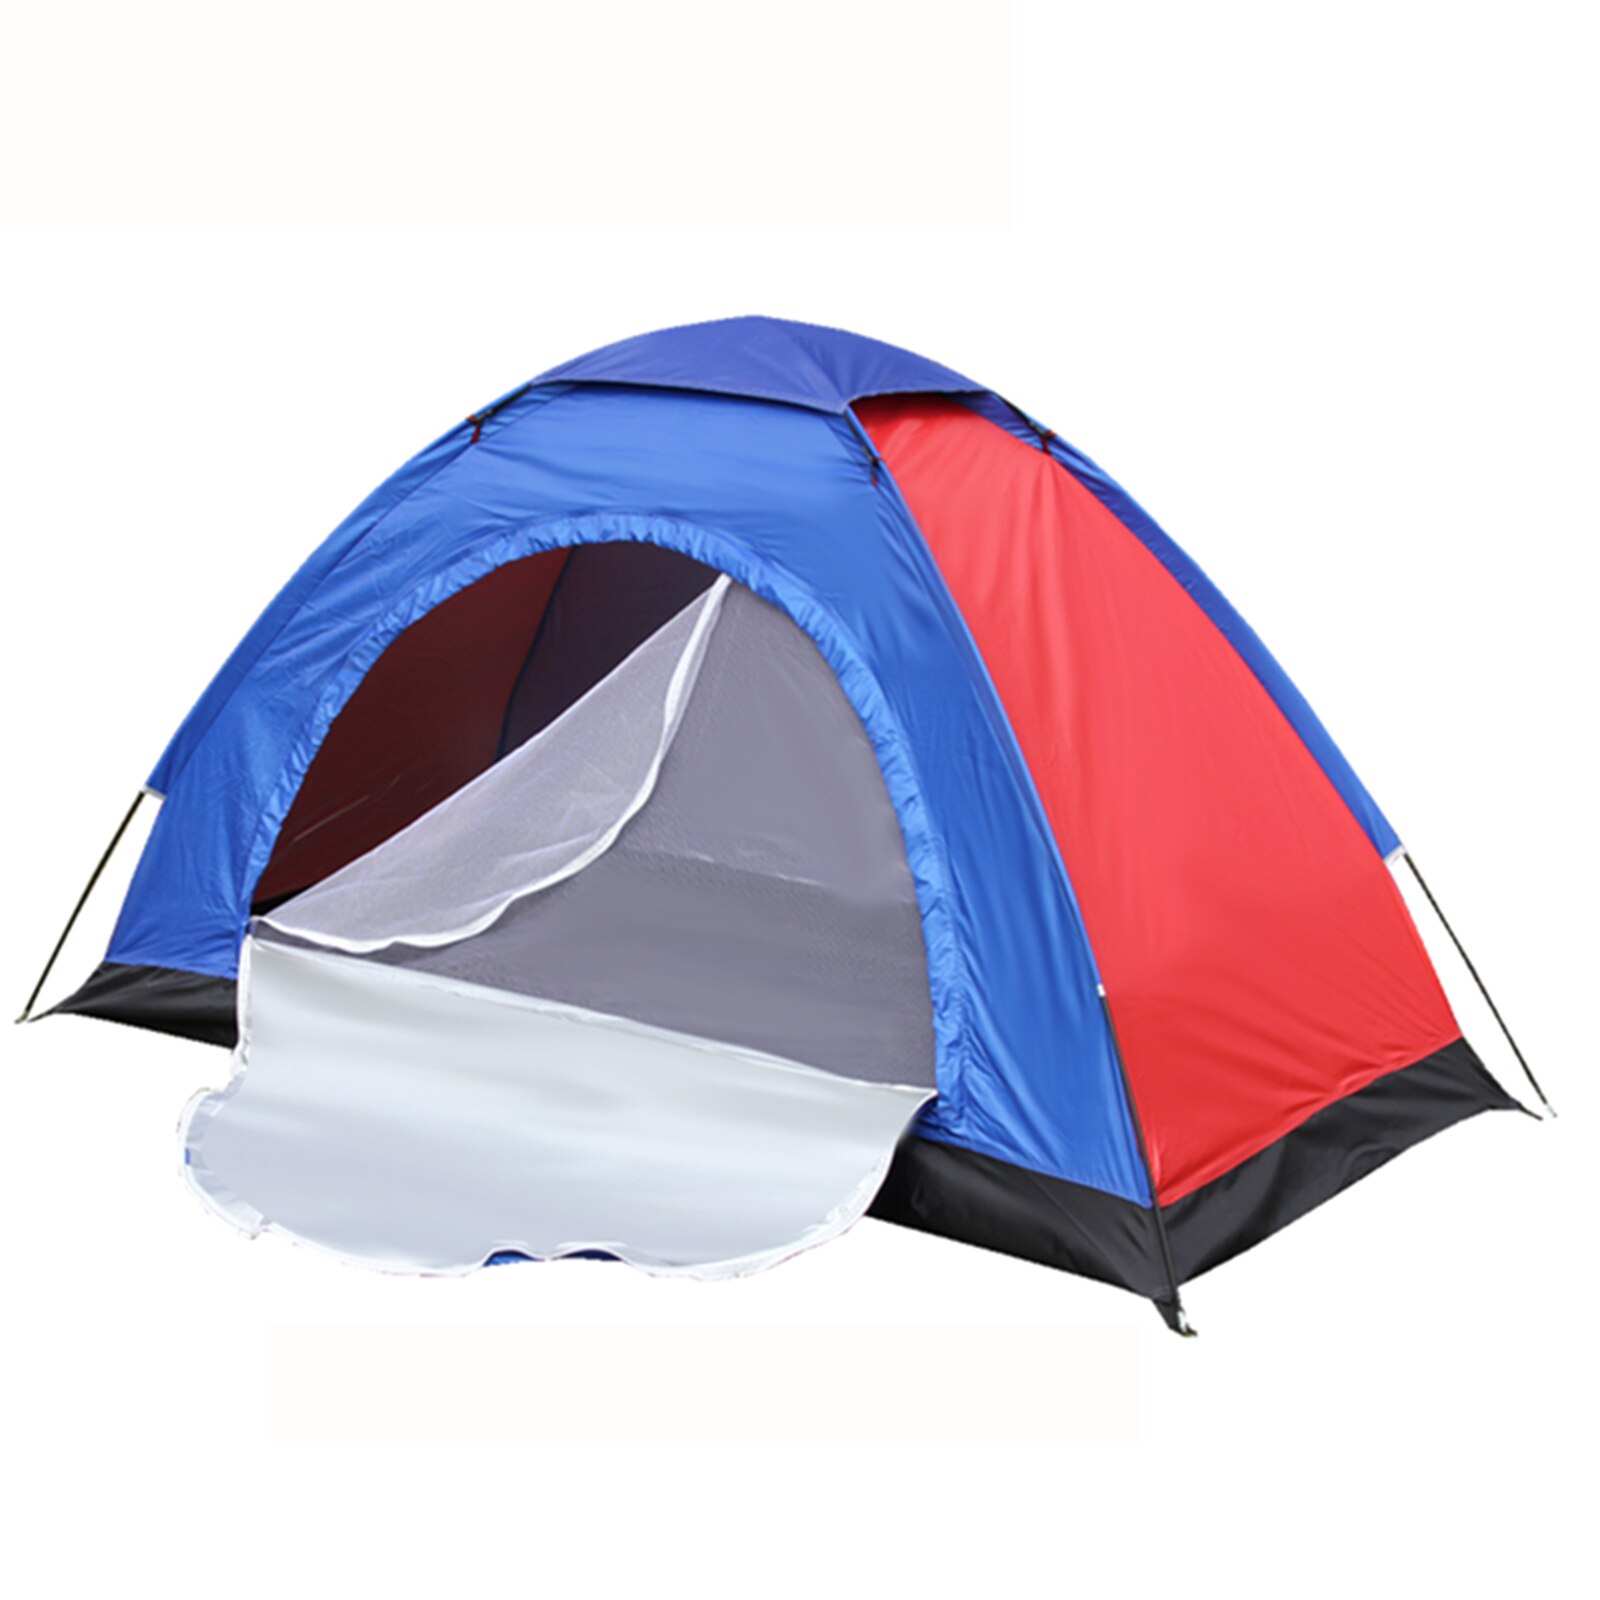 여행용 경량 캠핑 텐트, 쉬운 설치, 정원 햇빛 가리개, 야외 하이킹 캠핑 용품, 1, 2 인용